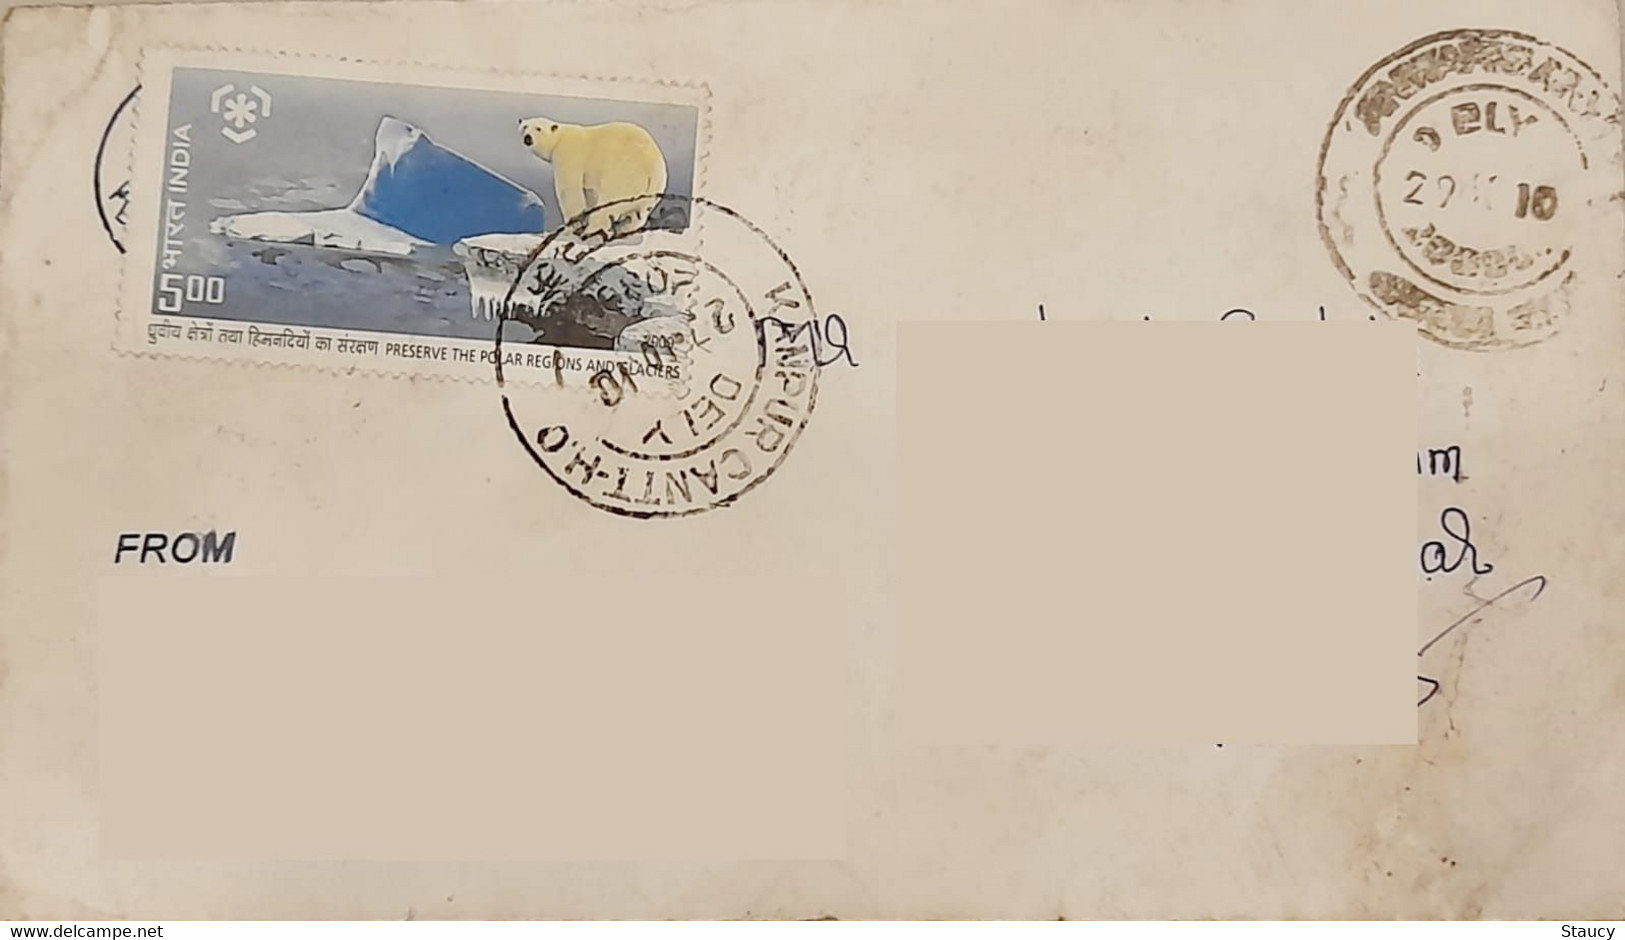 INDIA 2010 Preserve Polar Region & Glaciers Stamps Franked On Postal Cover As Per Scan - Preservar Las Regiones Polares Y Glaciares